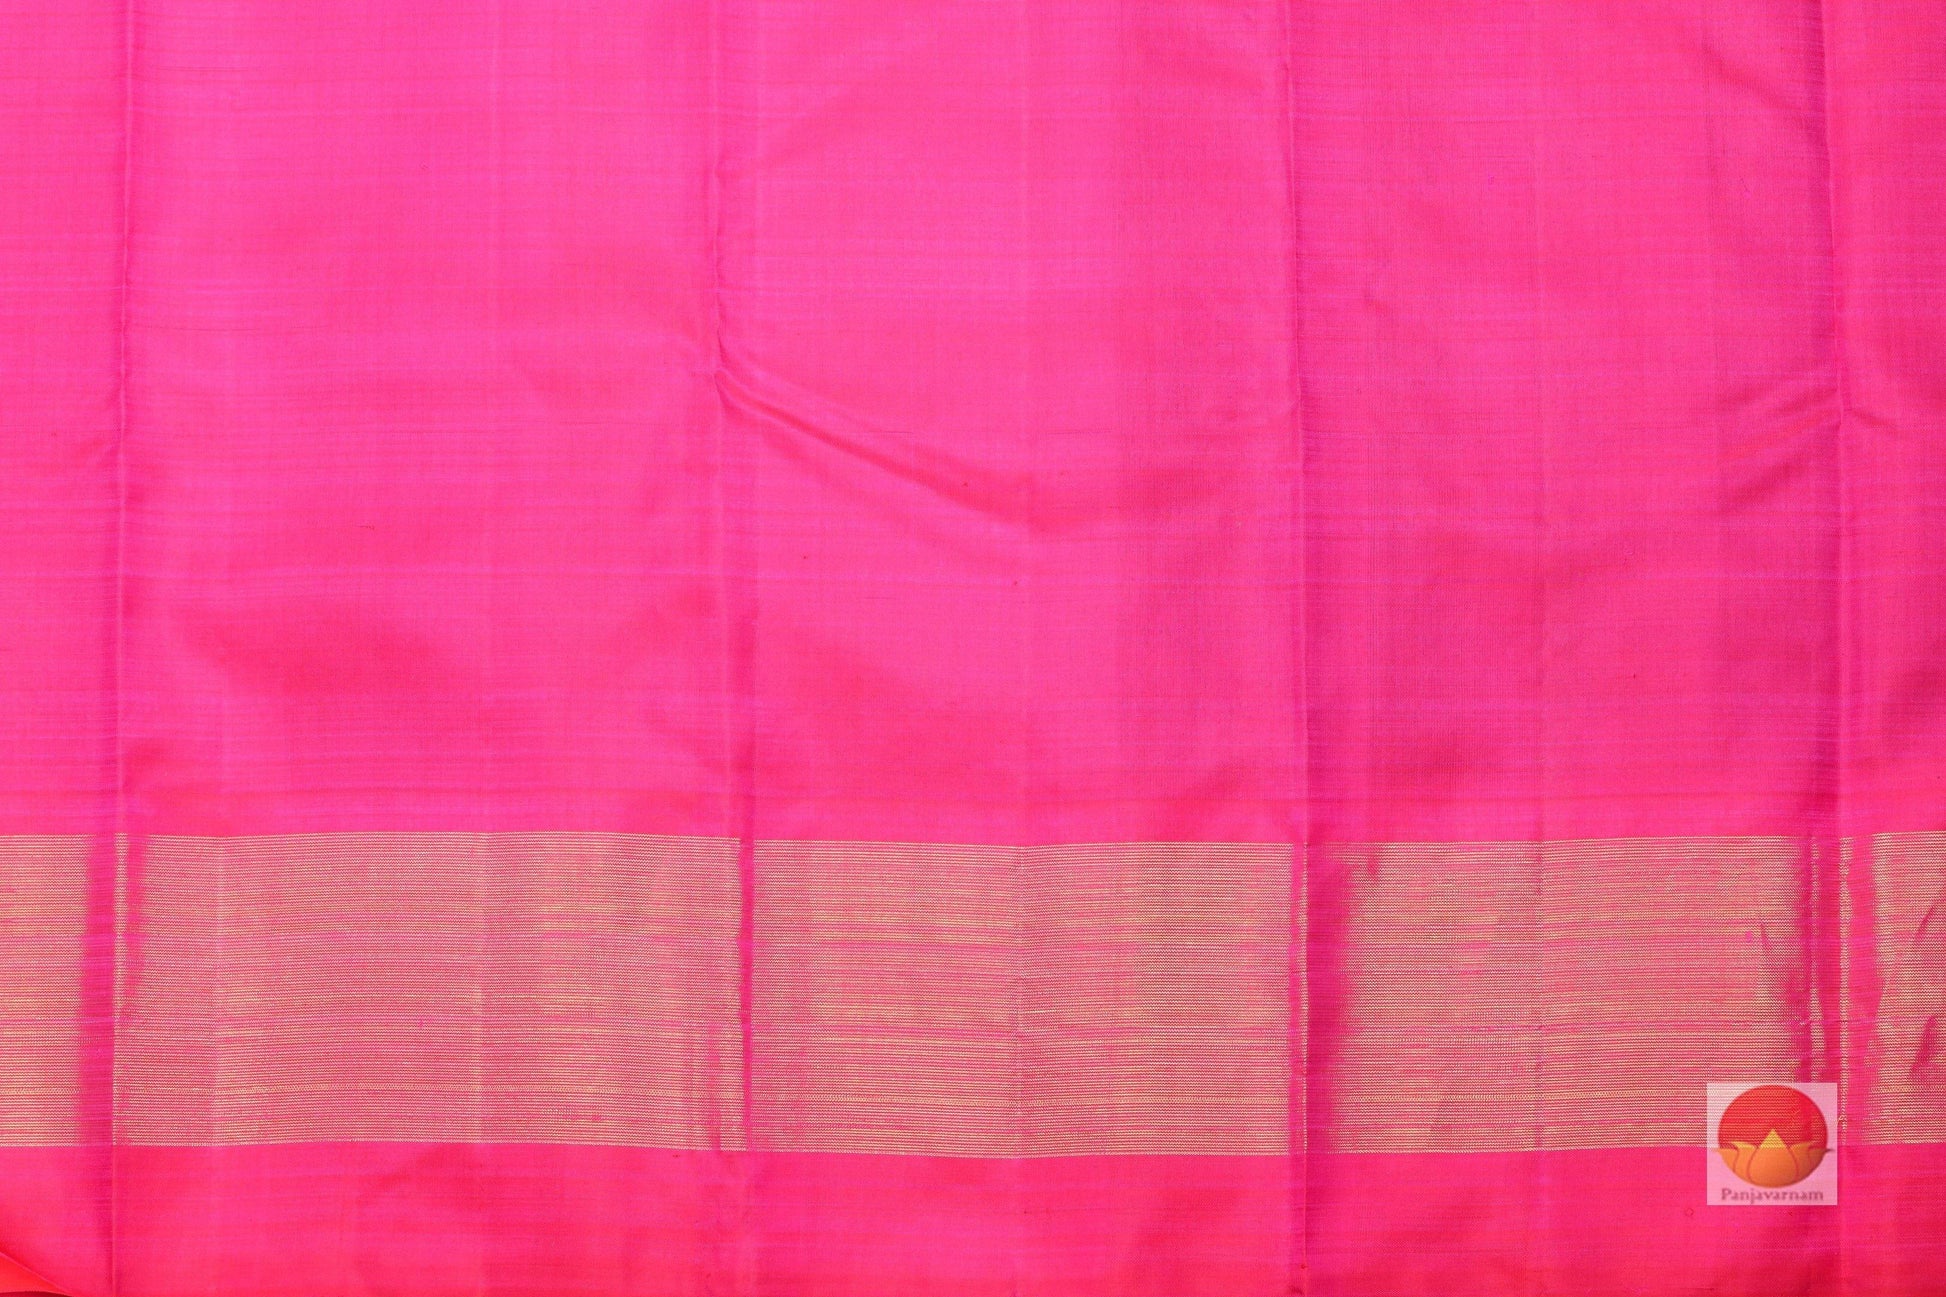 Temple Border Handwoven Pure Silk Kanjivaram Saree - Pure Zari - PA 196 - Archives - Silk Sari - Panjavarnam